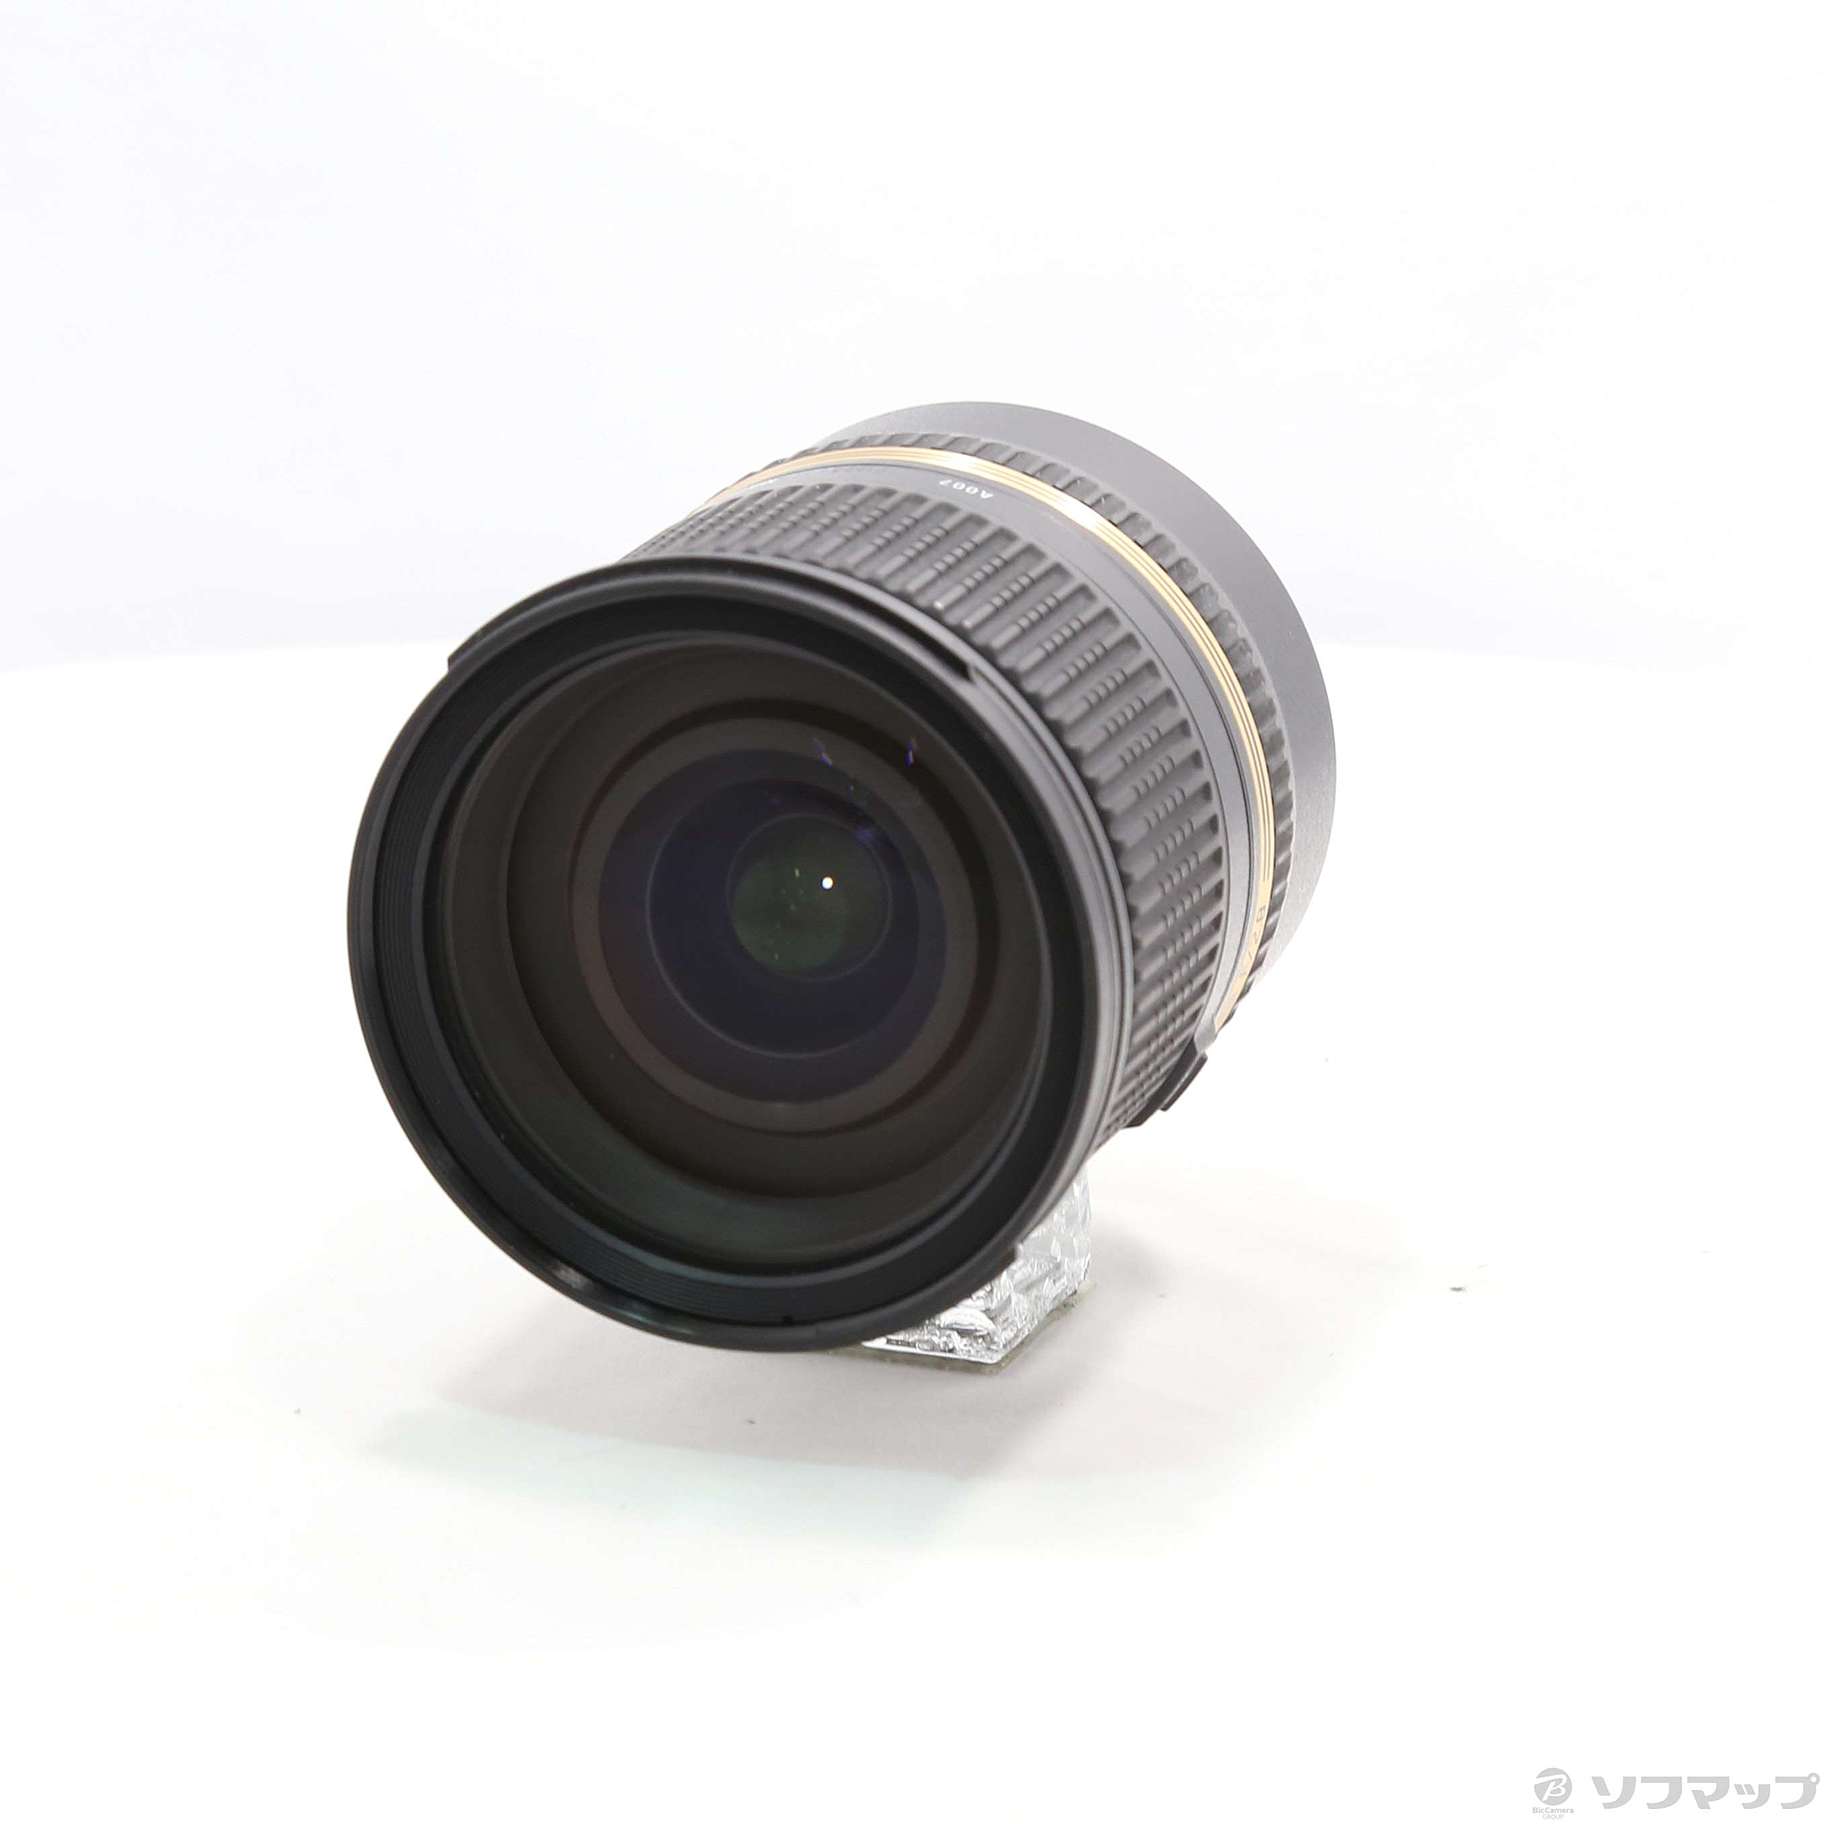 中古】SP 24-70mmF2.8 Di VC USD (Nikon用) (Model A007) (レンズ